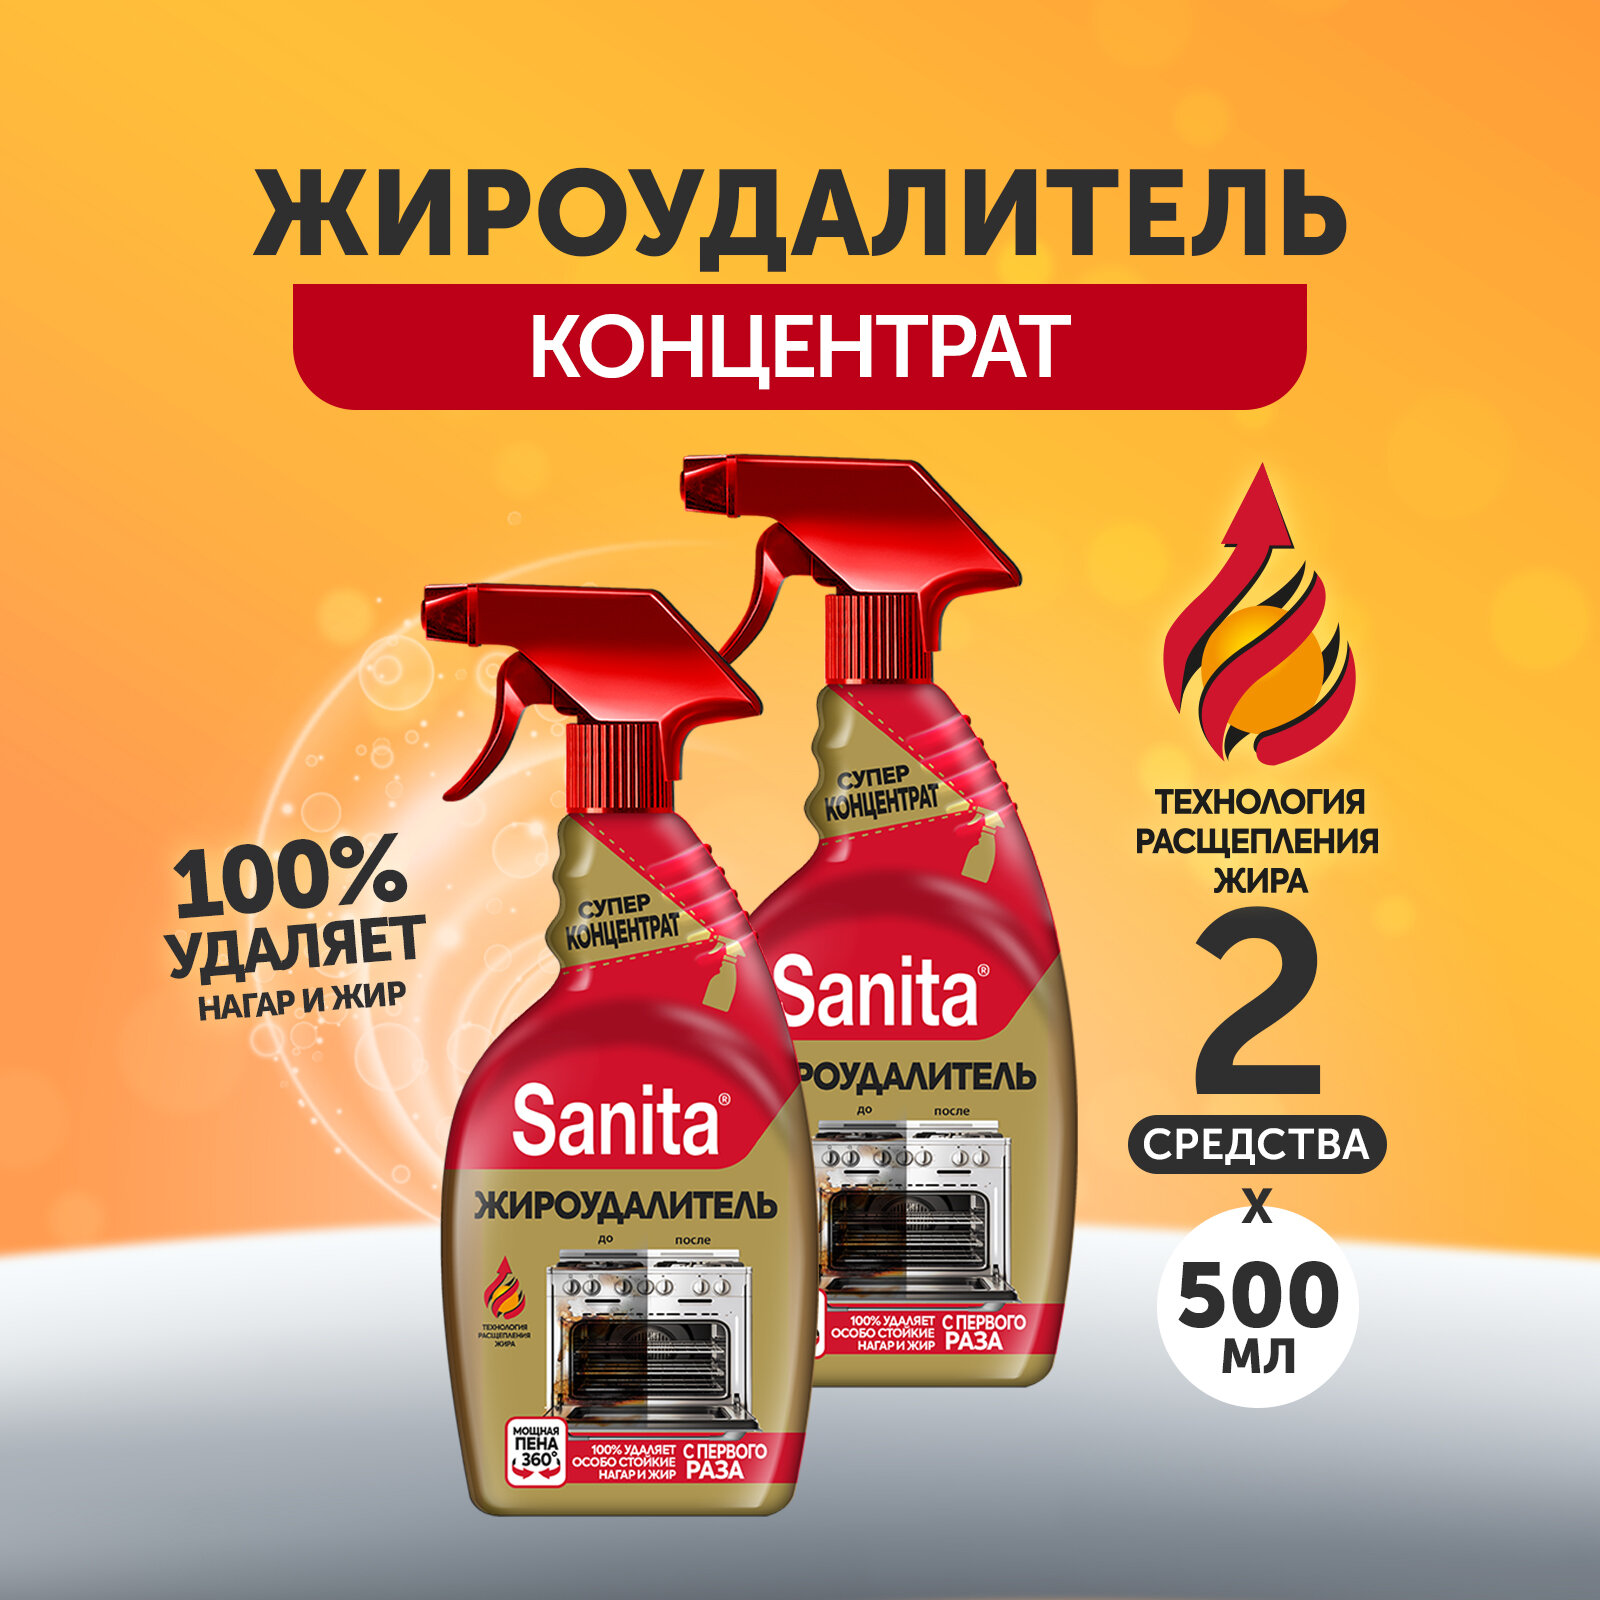 Набор чистящих средств для кухни "Sanita" Жироудалитель GOLD спрей очиститель антижир, 500 мл (2шт)